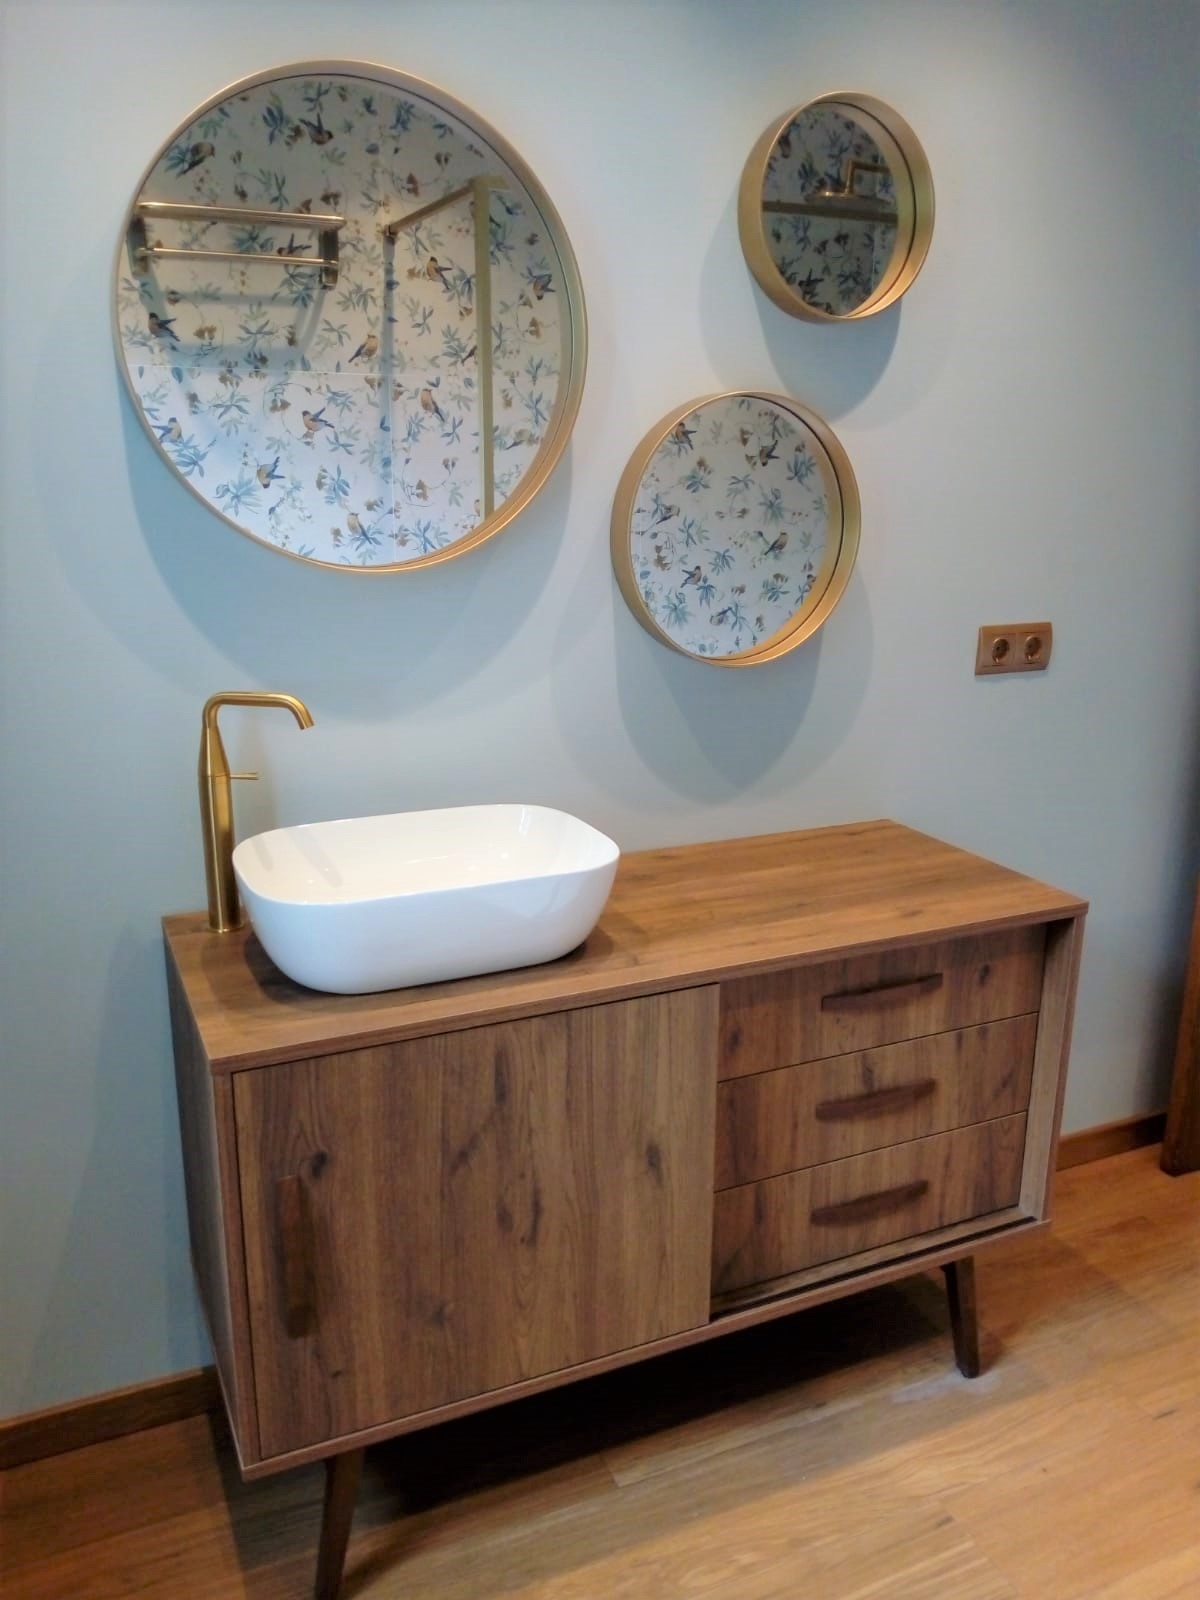 Baño reformado con tres espejos redondos en la pared y mueble de madera